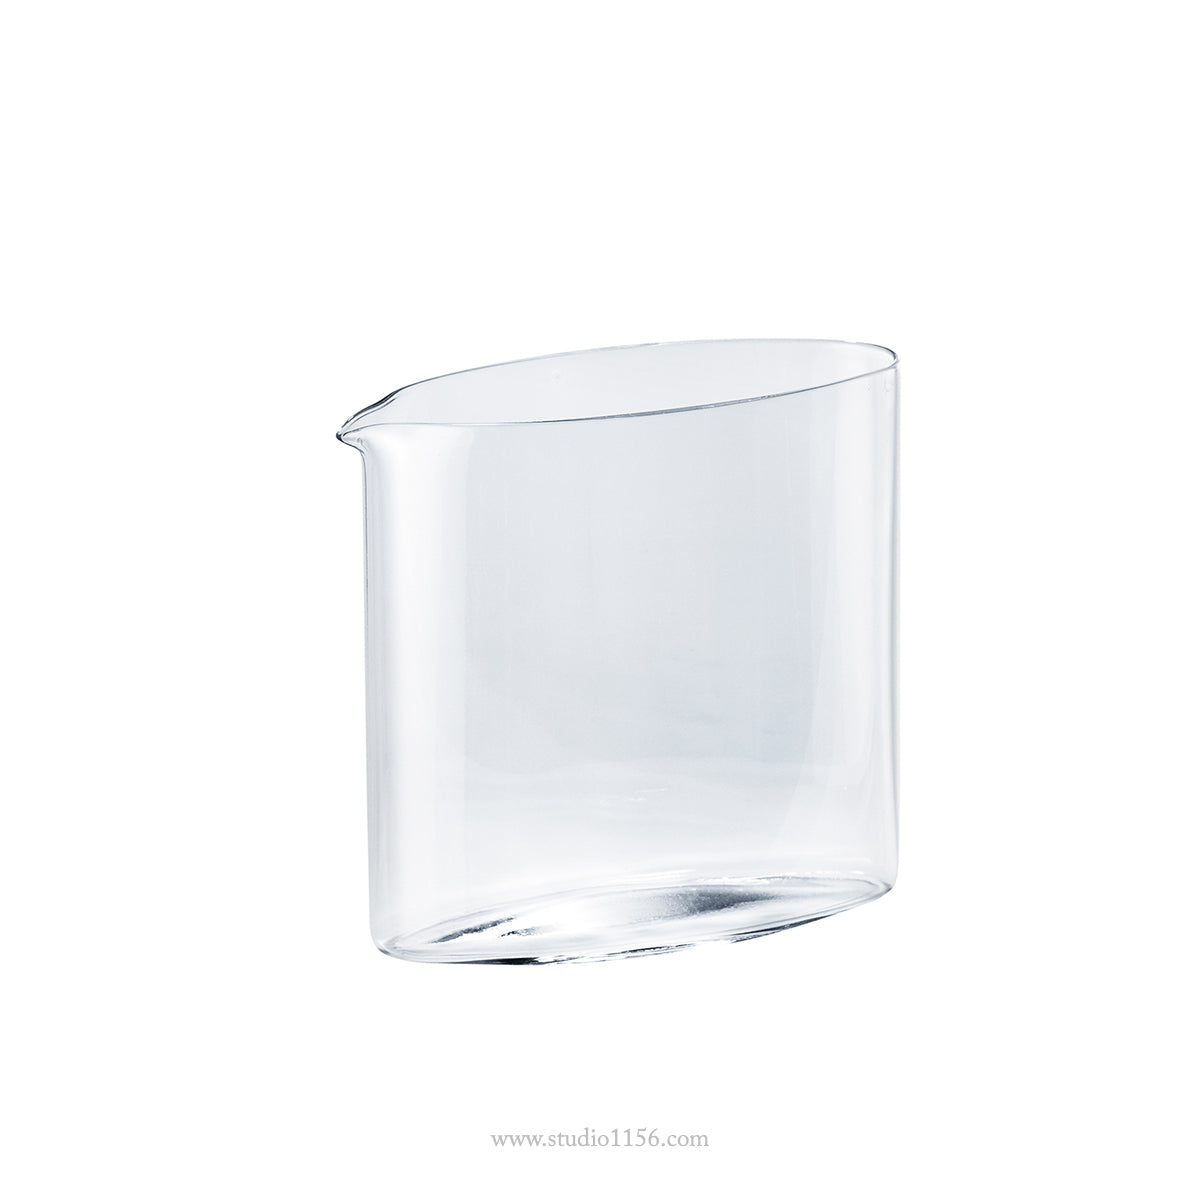 ガラス食器 オーバル片口酒器 160ml/290ml L(290ml) Yoshinuma-glass Studio1156